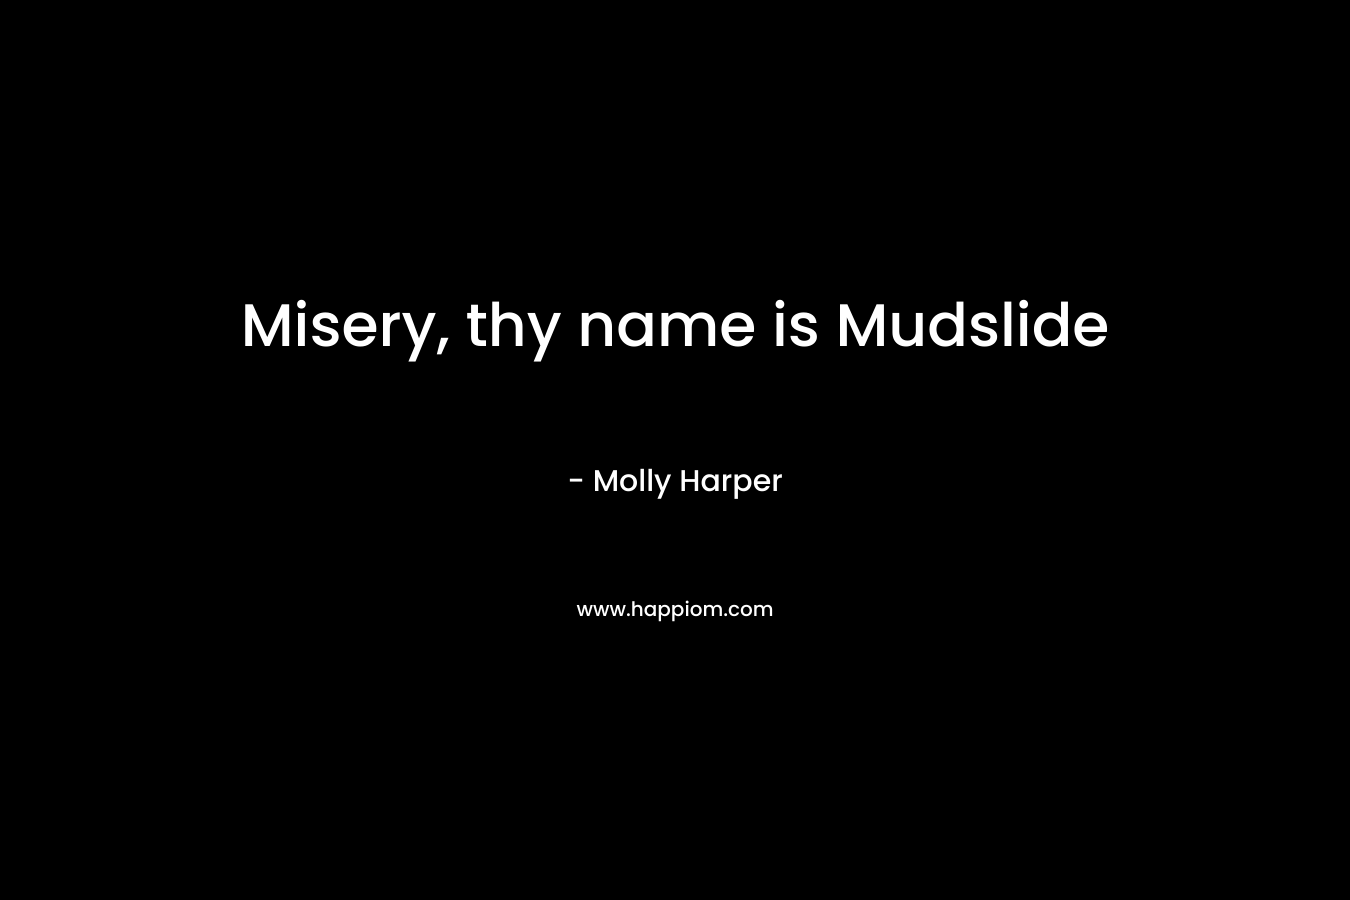 Misery, thy name is Mudslide